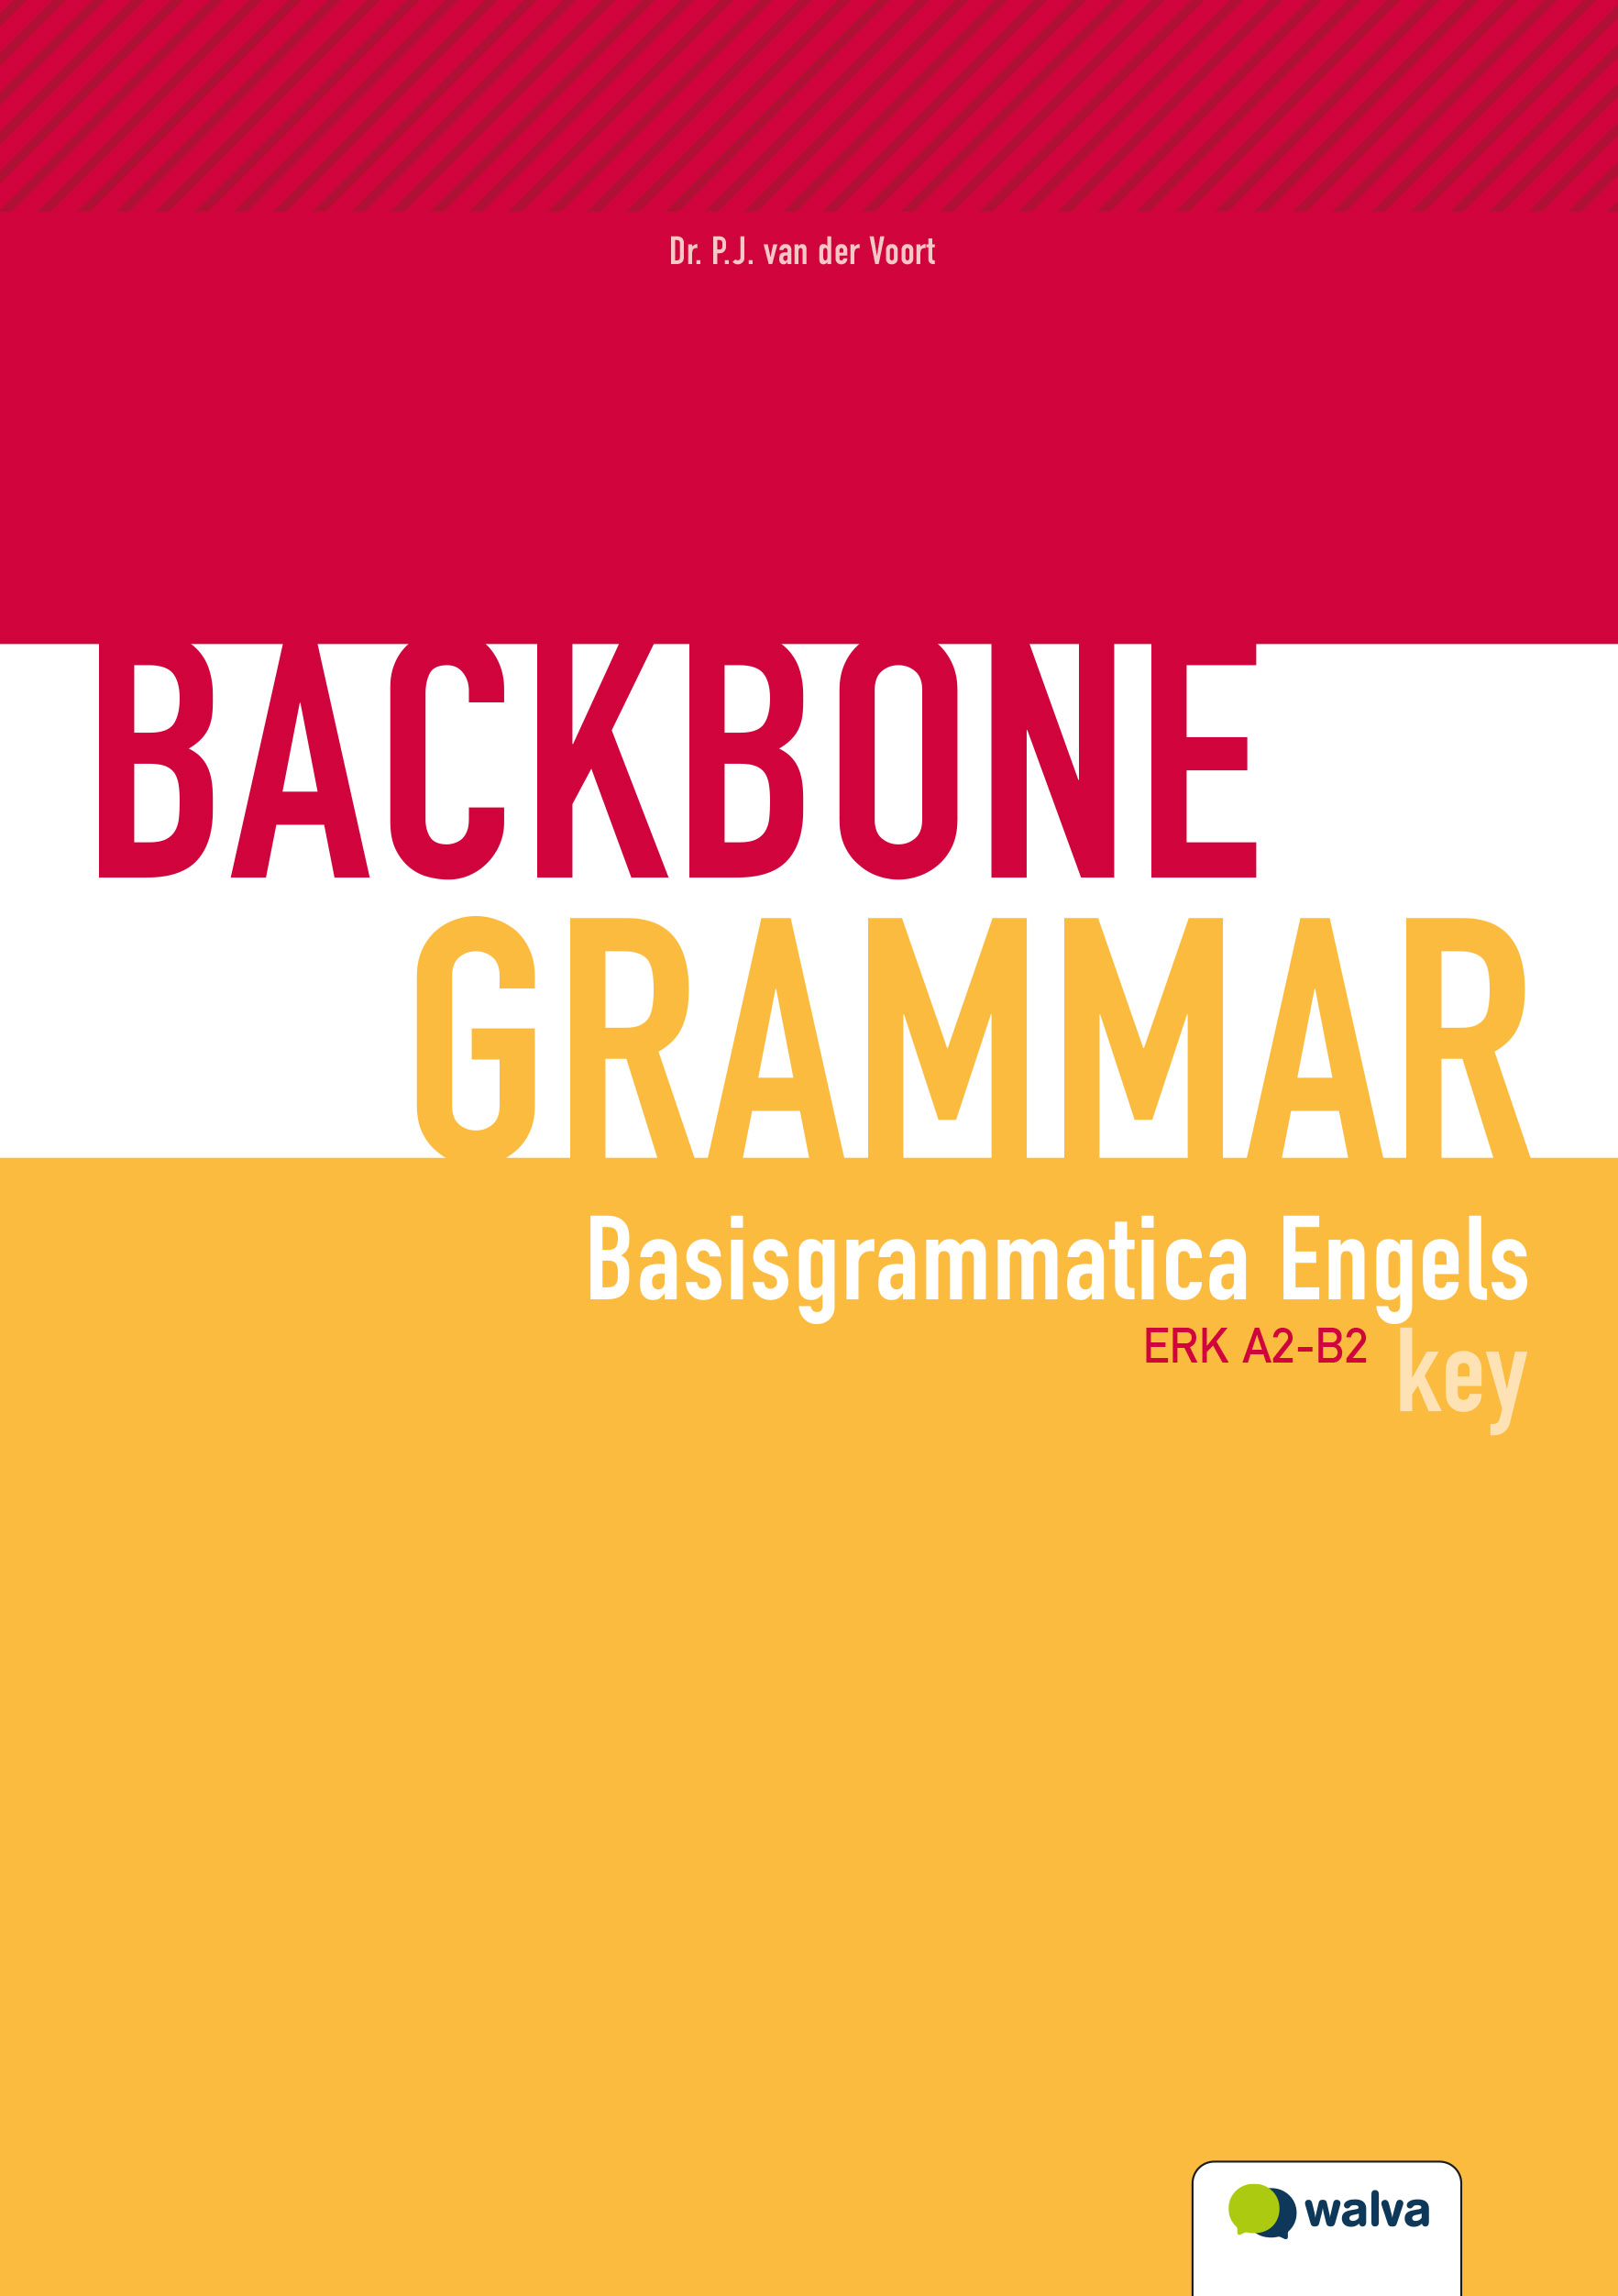 WEHBBG001 Backbone Grammar, key